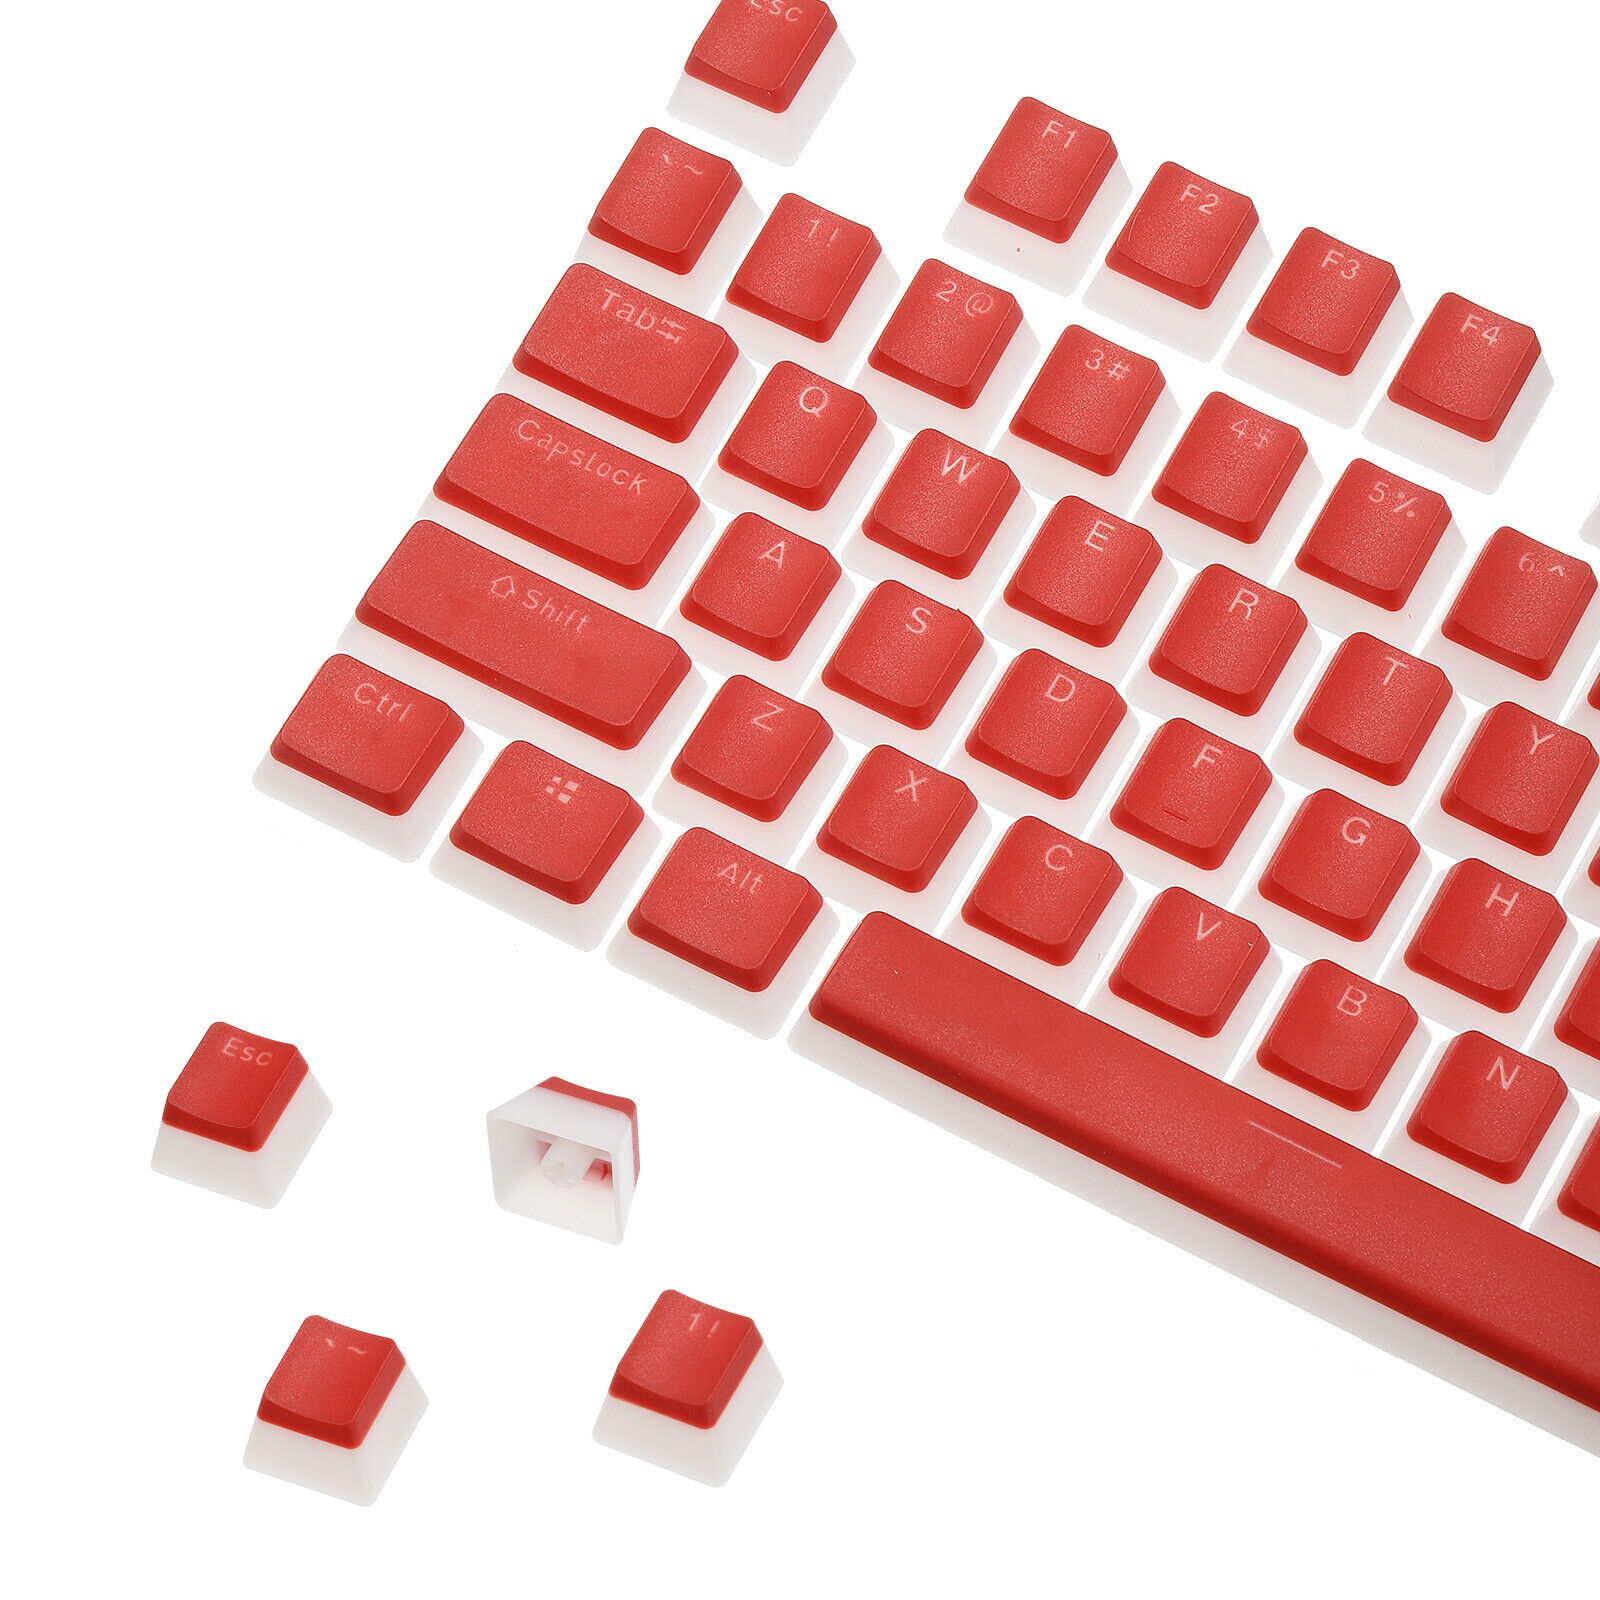 108 Keys PBT Pudding Keycaps Set OEM for Mechanical Keyboard Red